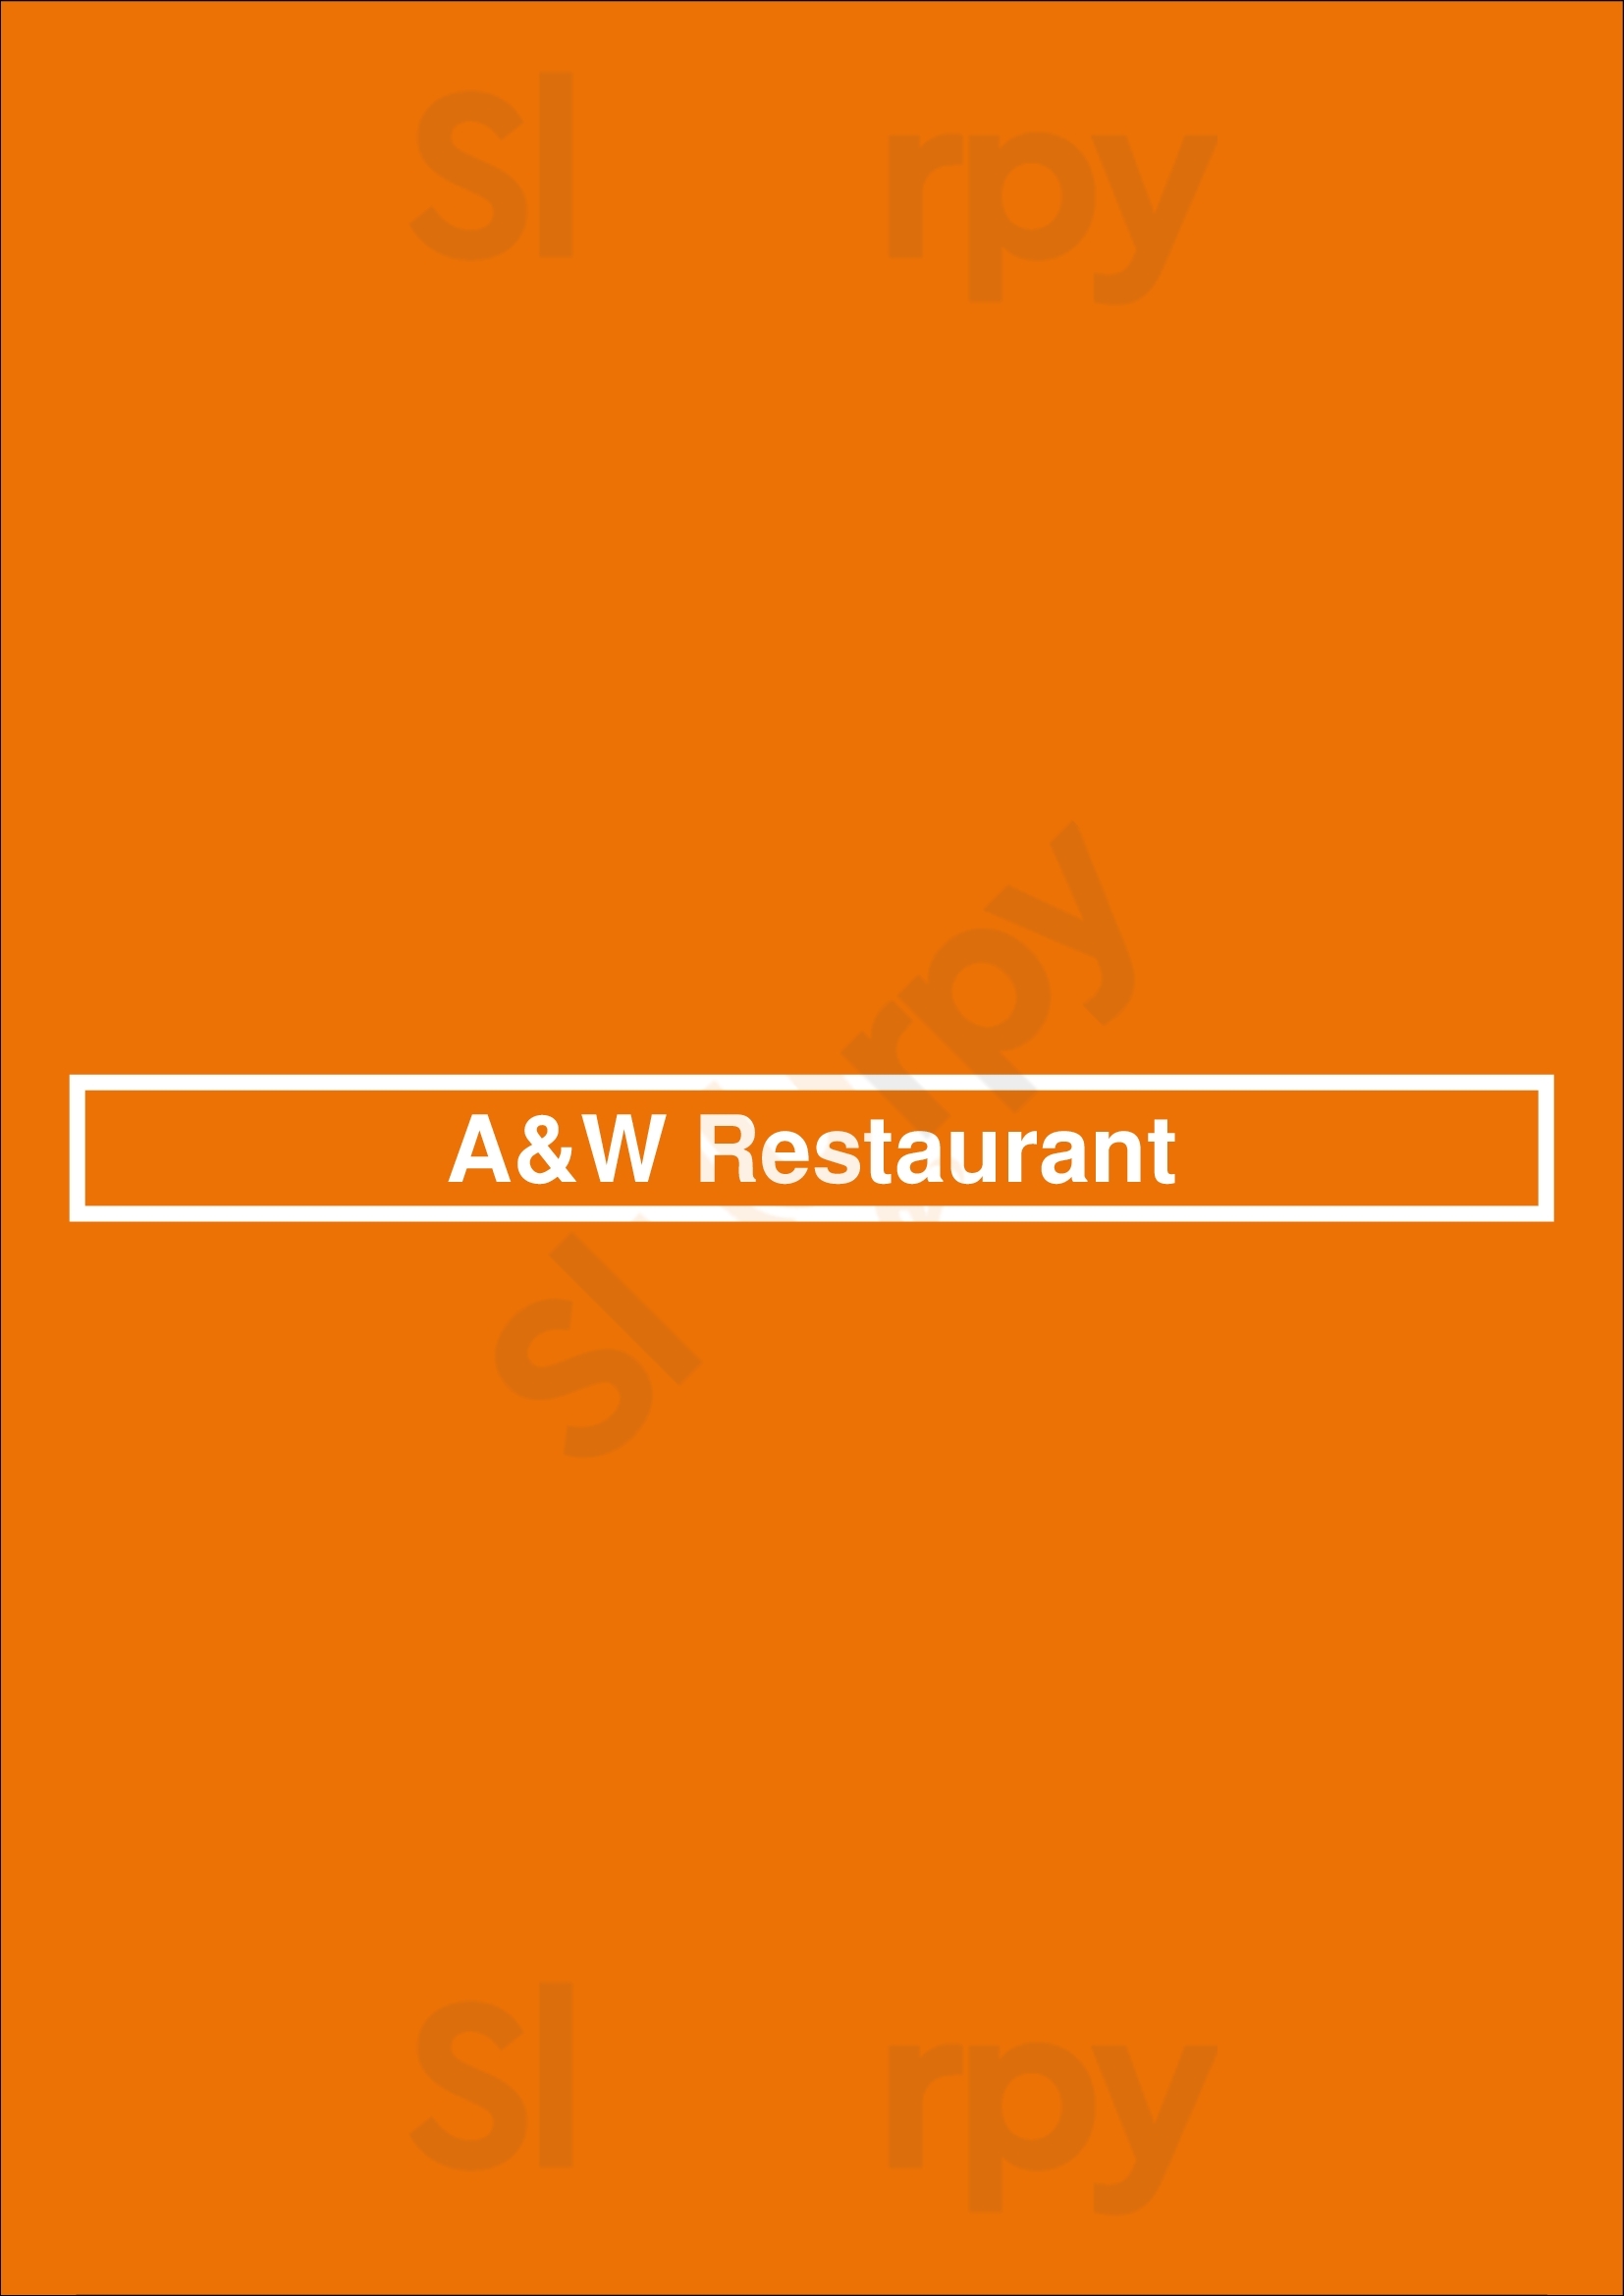 A&w Restaurant Airdrie Menu - 1